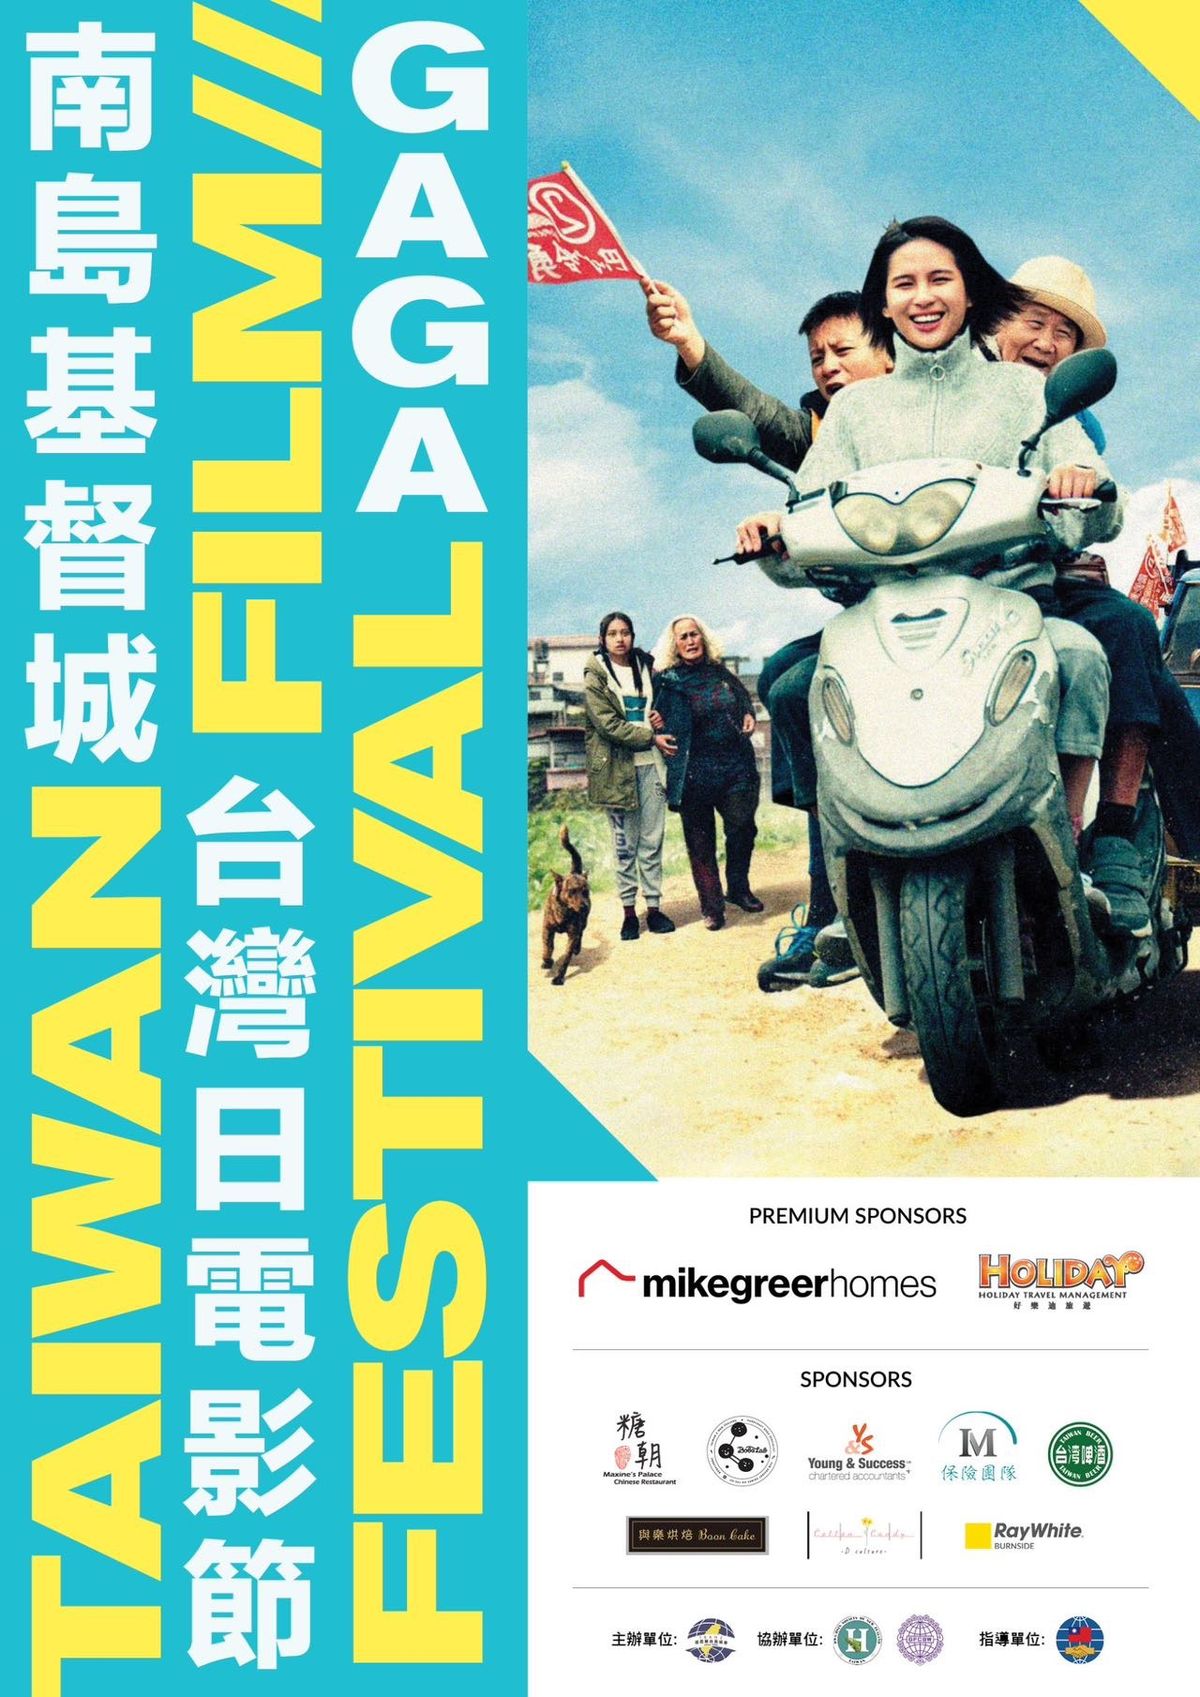 Taiwan Film Festival